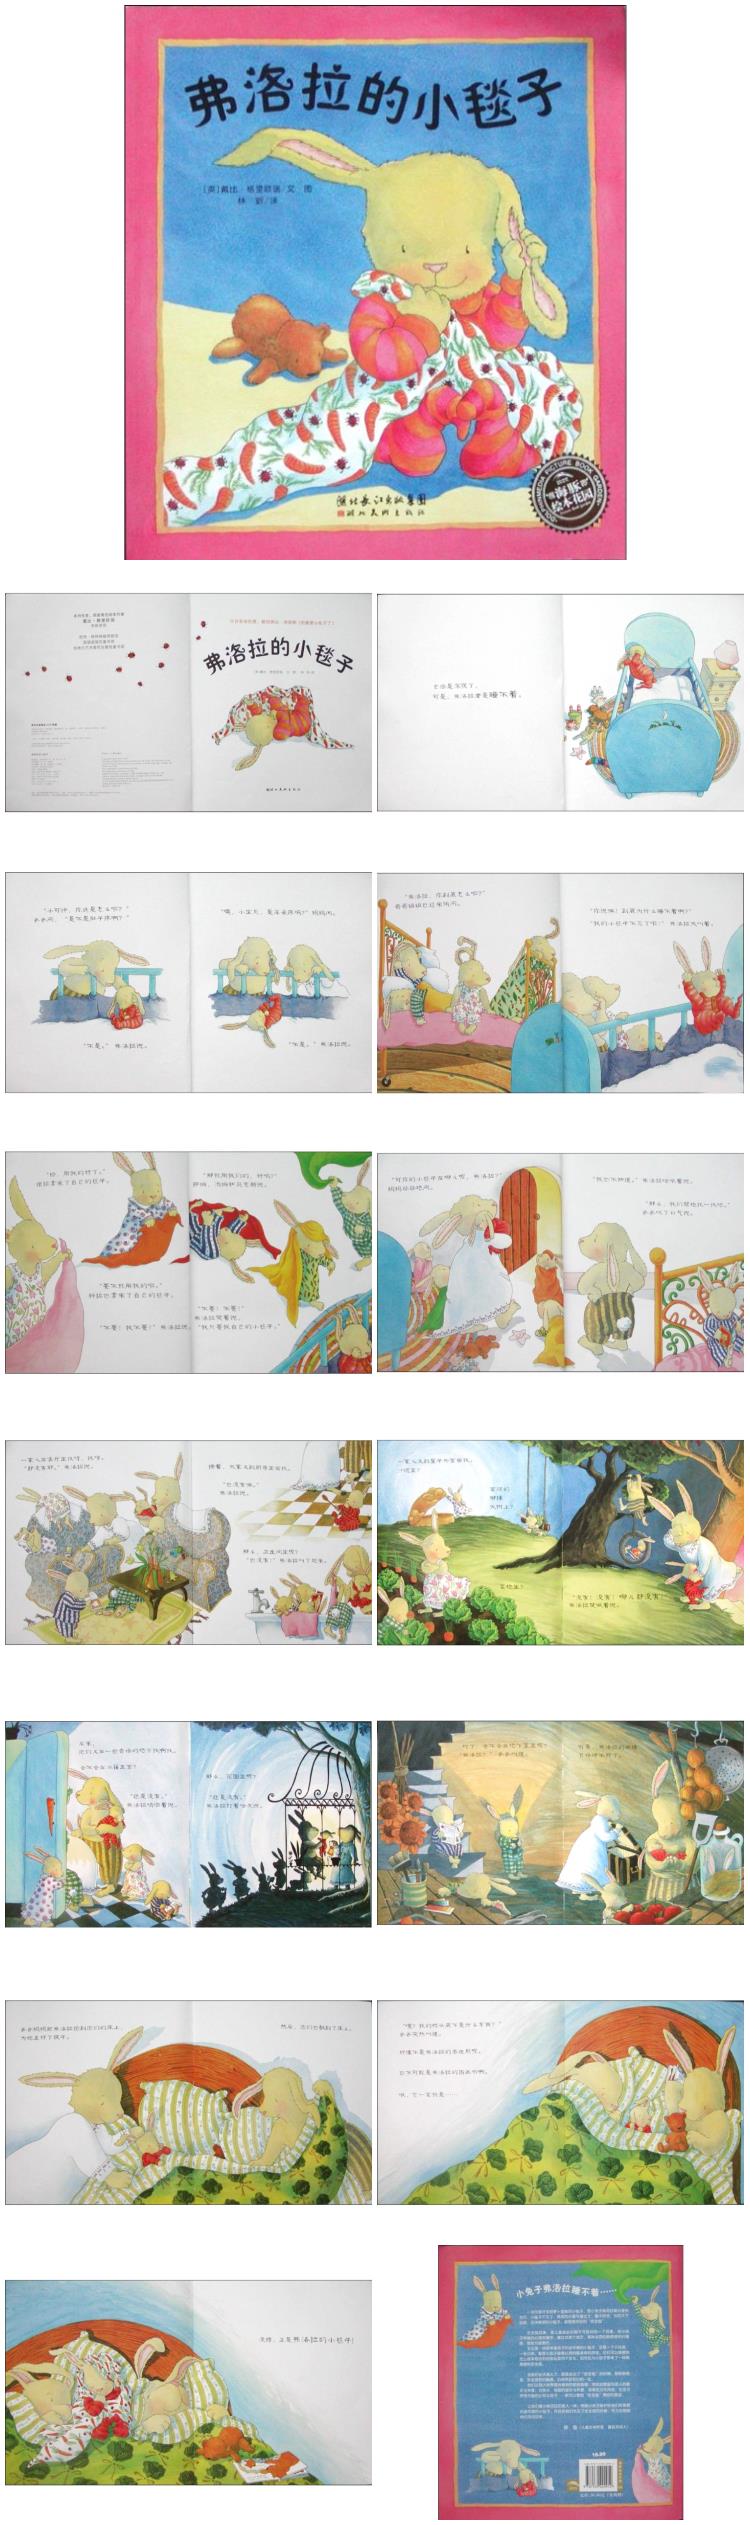 《弗洛拉的小毯子》童话绘本儿童故事PPT